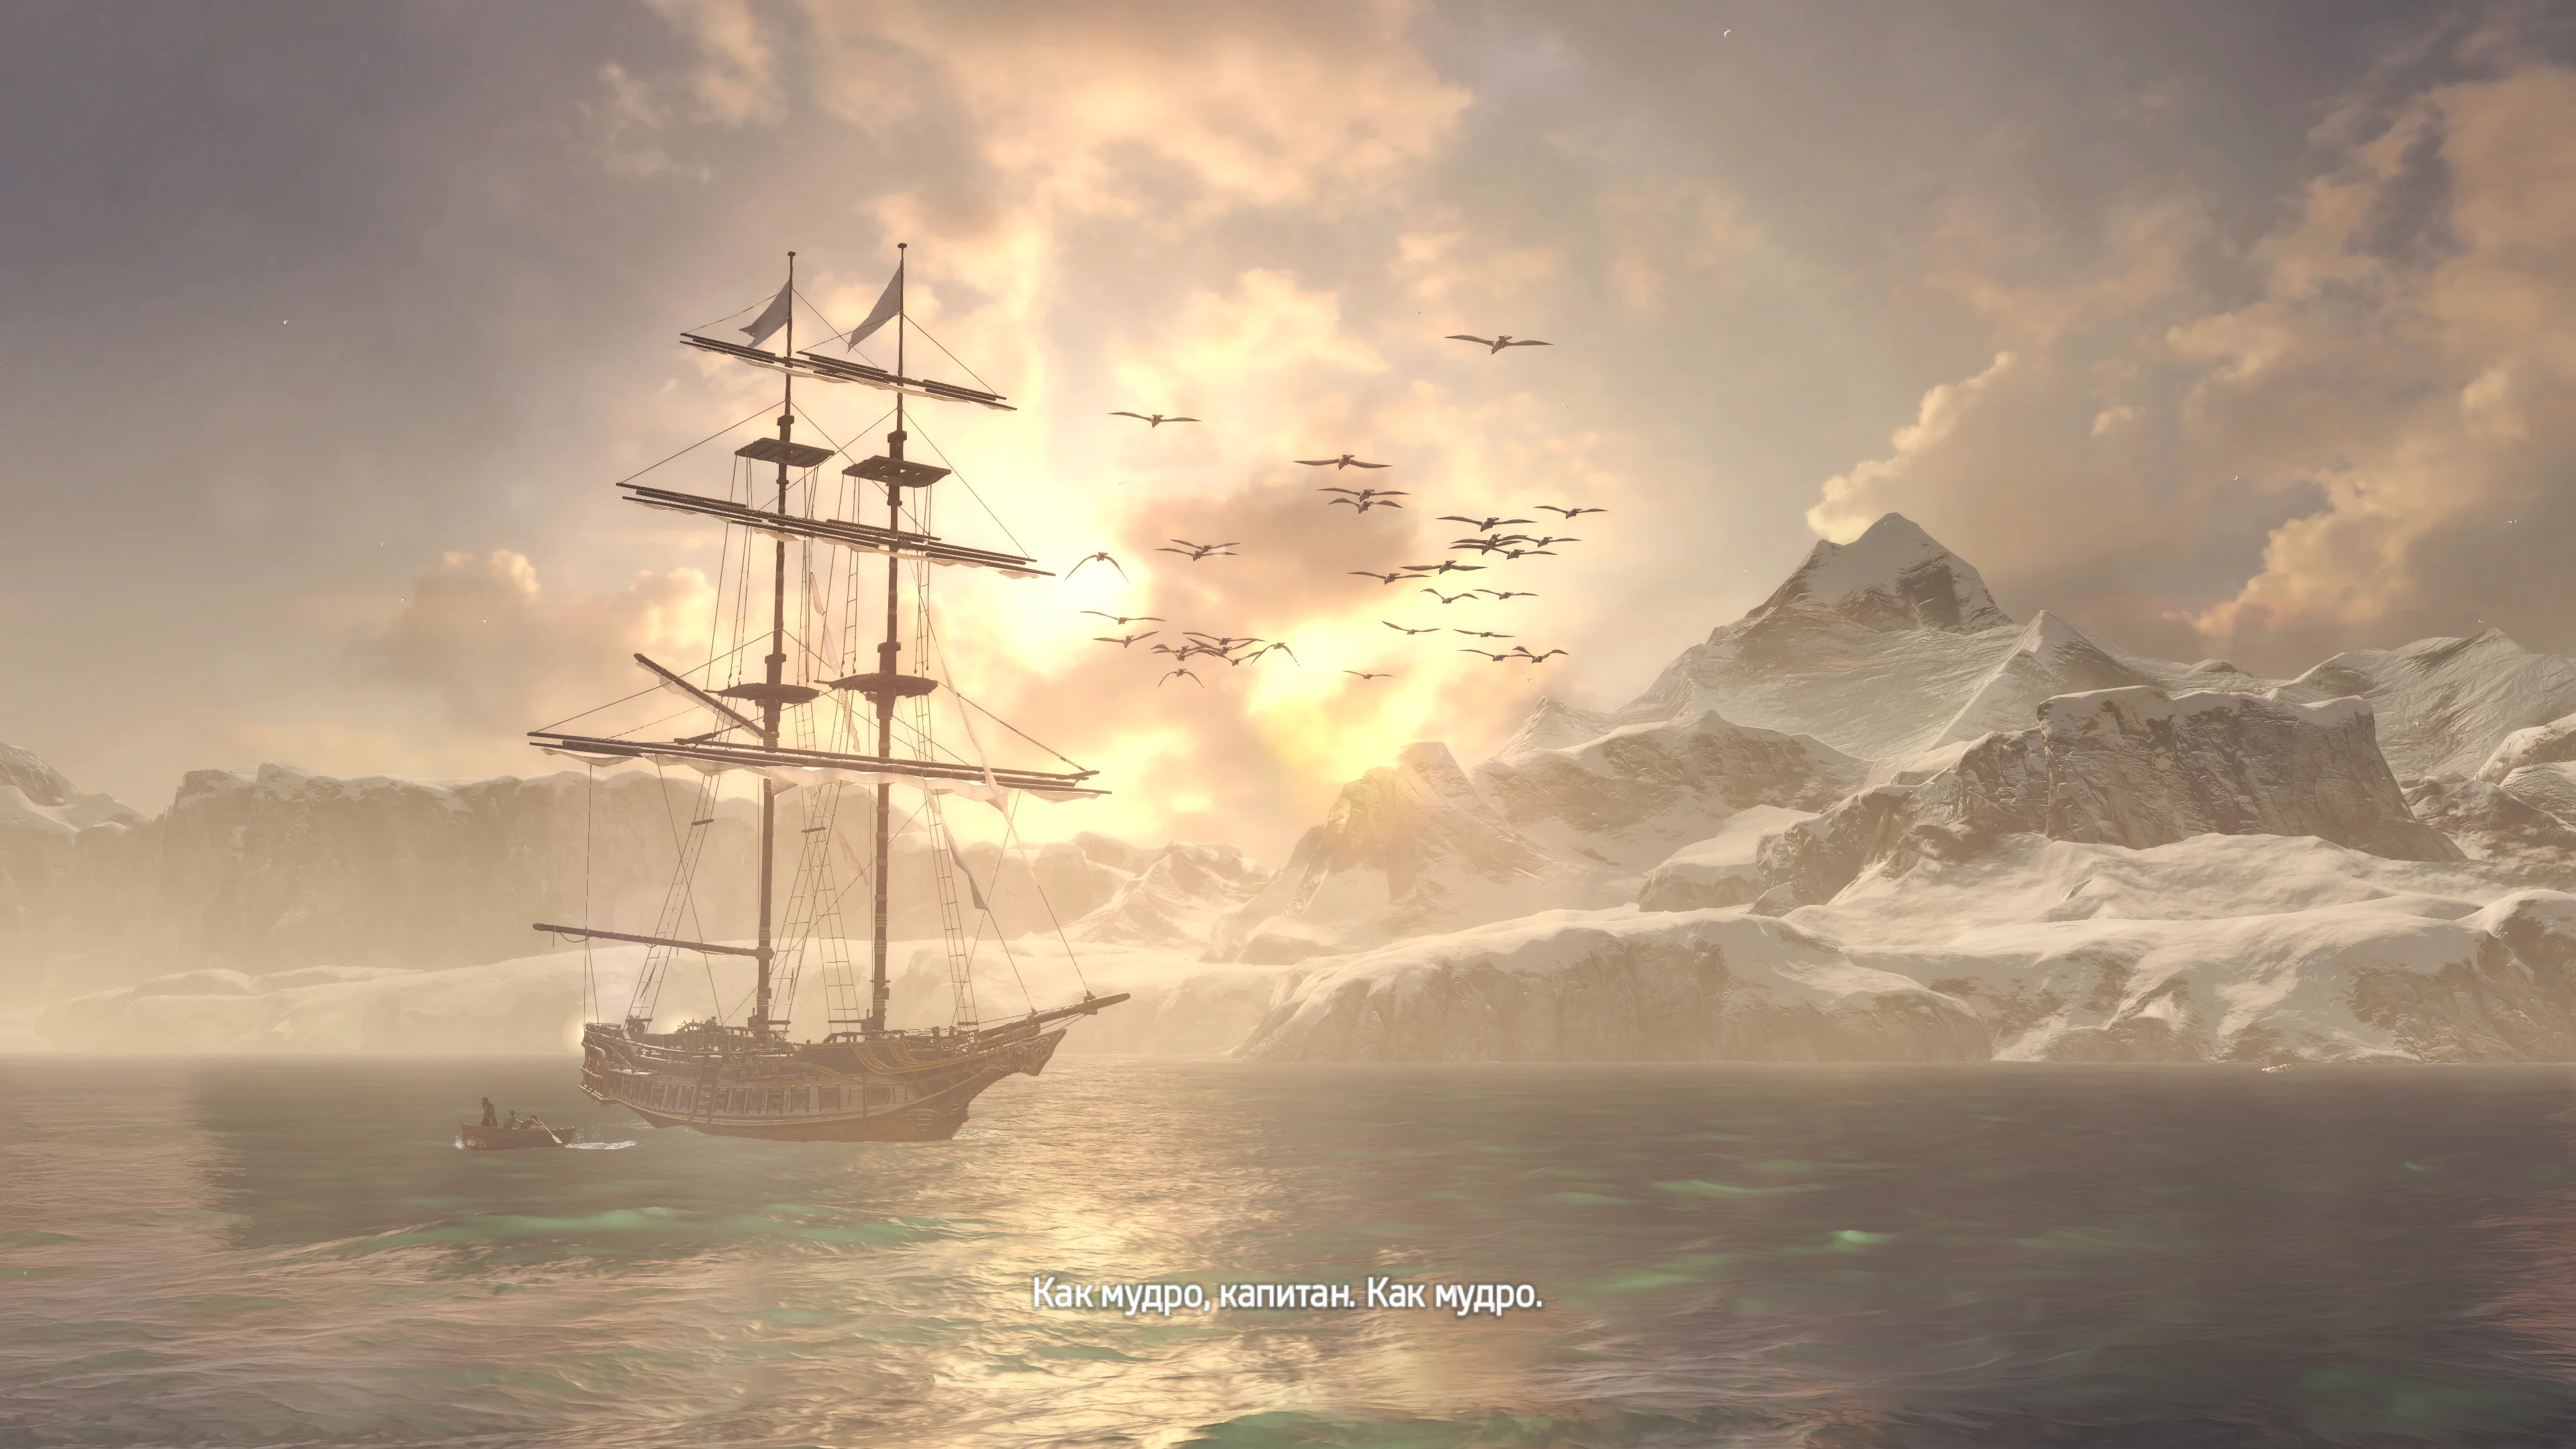 Assassin’s Creed Rogue очеловечивает тамплиеров и критикует ассасинов. Это важный шаг для серии - фото 2